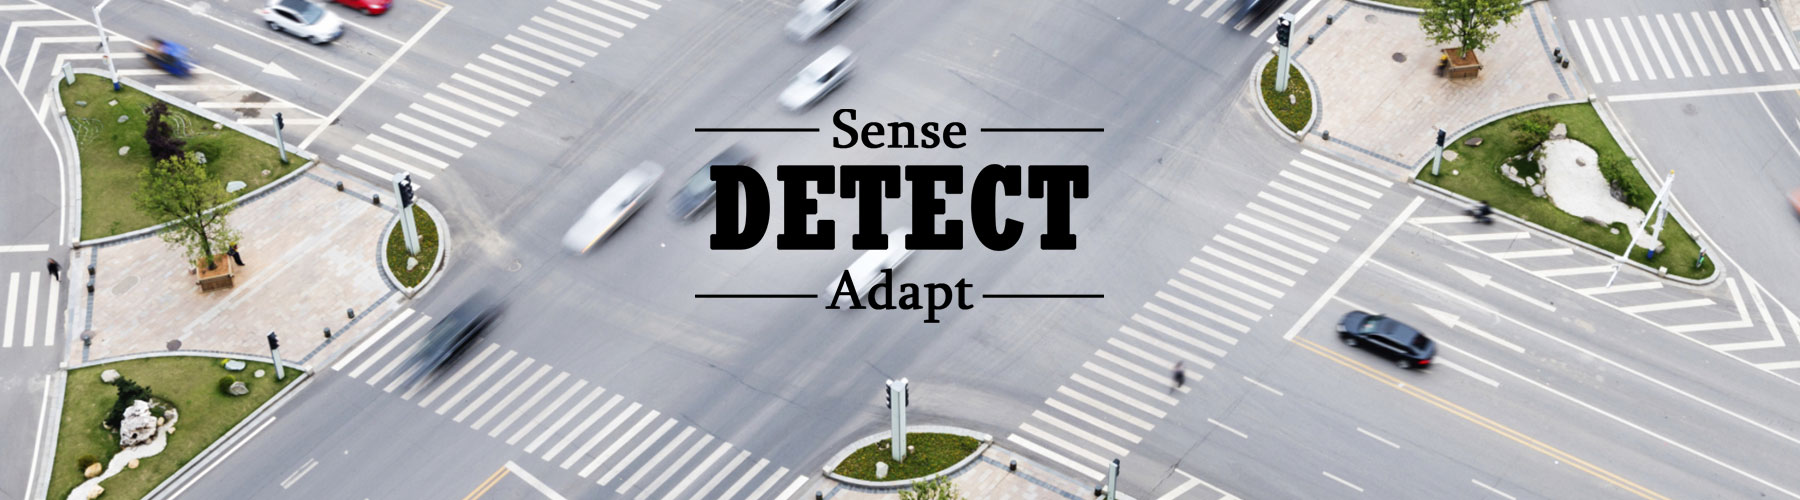 sense-detect-adapt